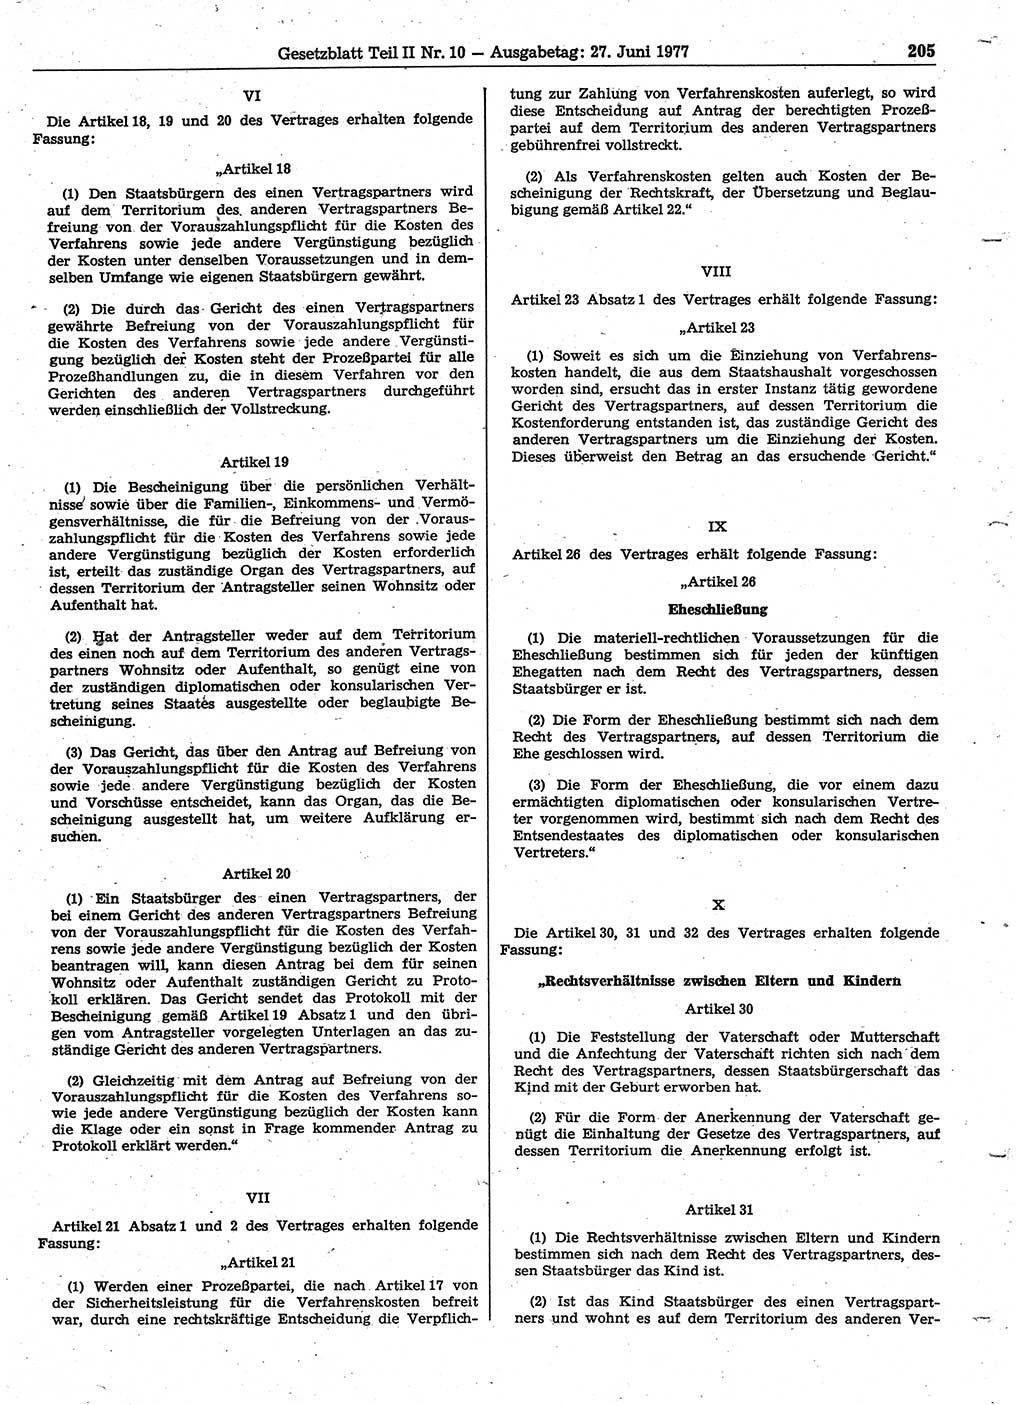 Gesetzblatt (GBl.) der Deutschen Demokratischen Republik (DDR) Teil ⅠⅠ 1977, Seite 205 (GBl. DDR ⅠⅠ 1977, S. 205)